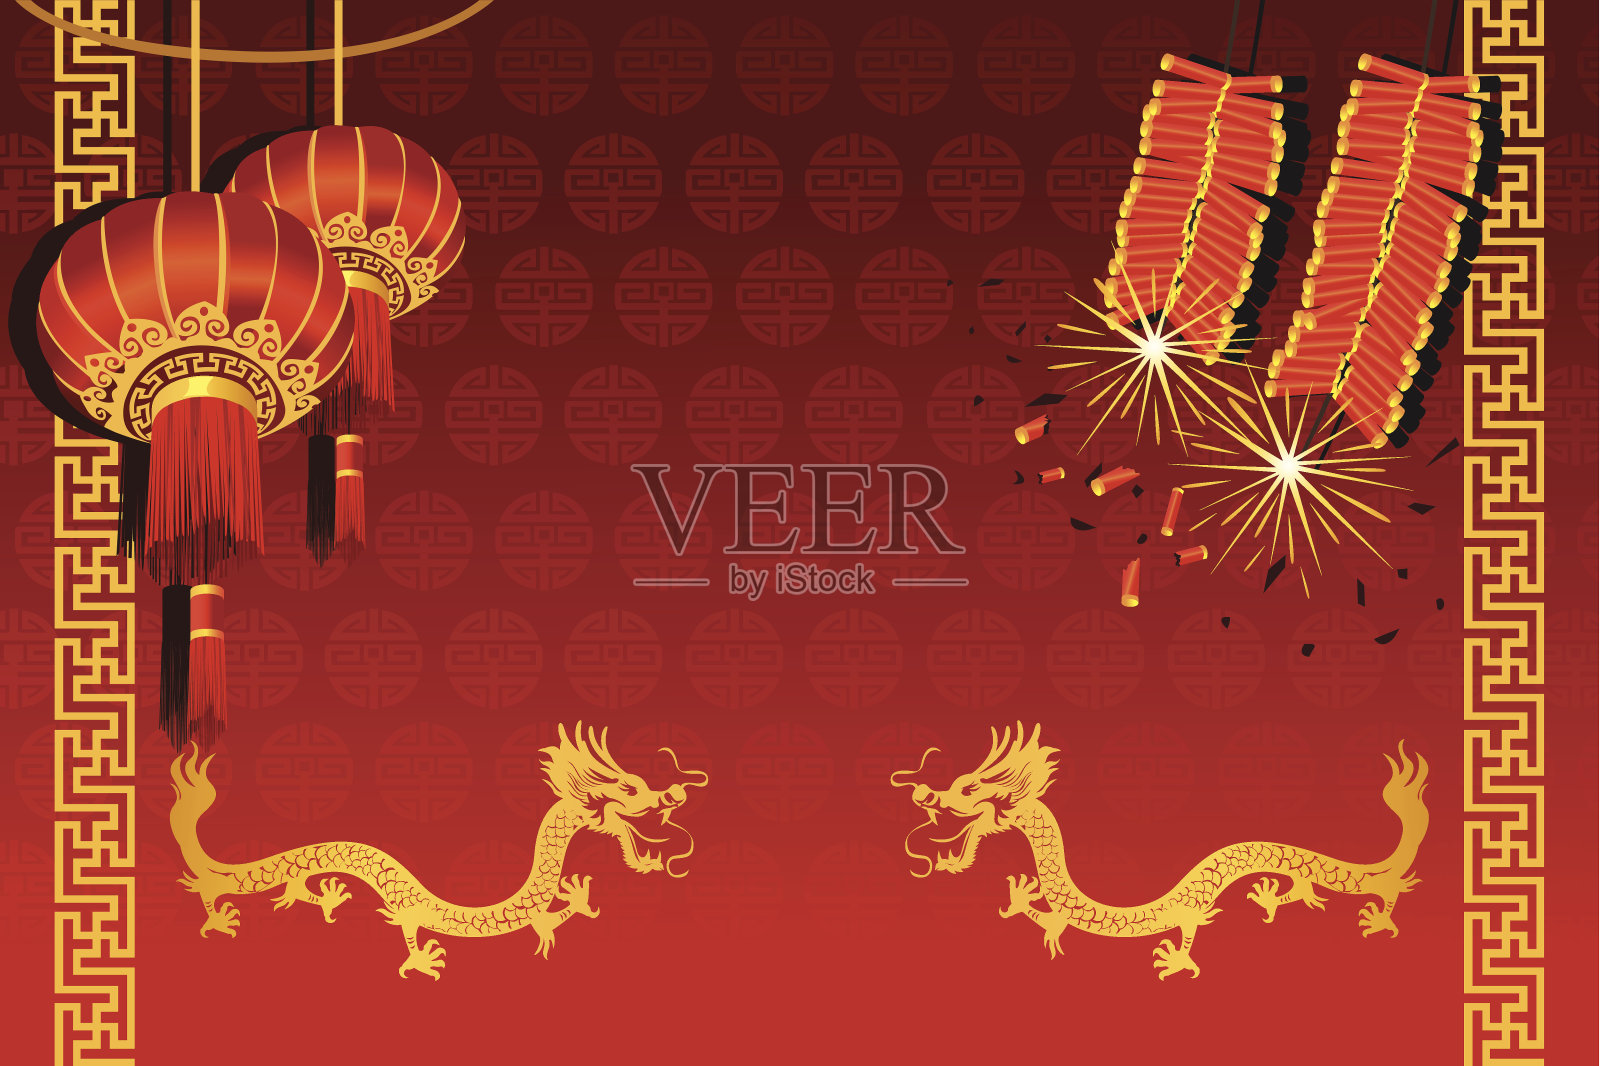 中国新年插画图片素材